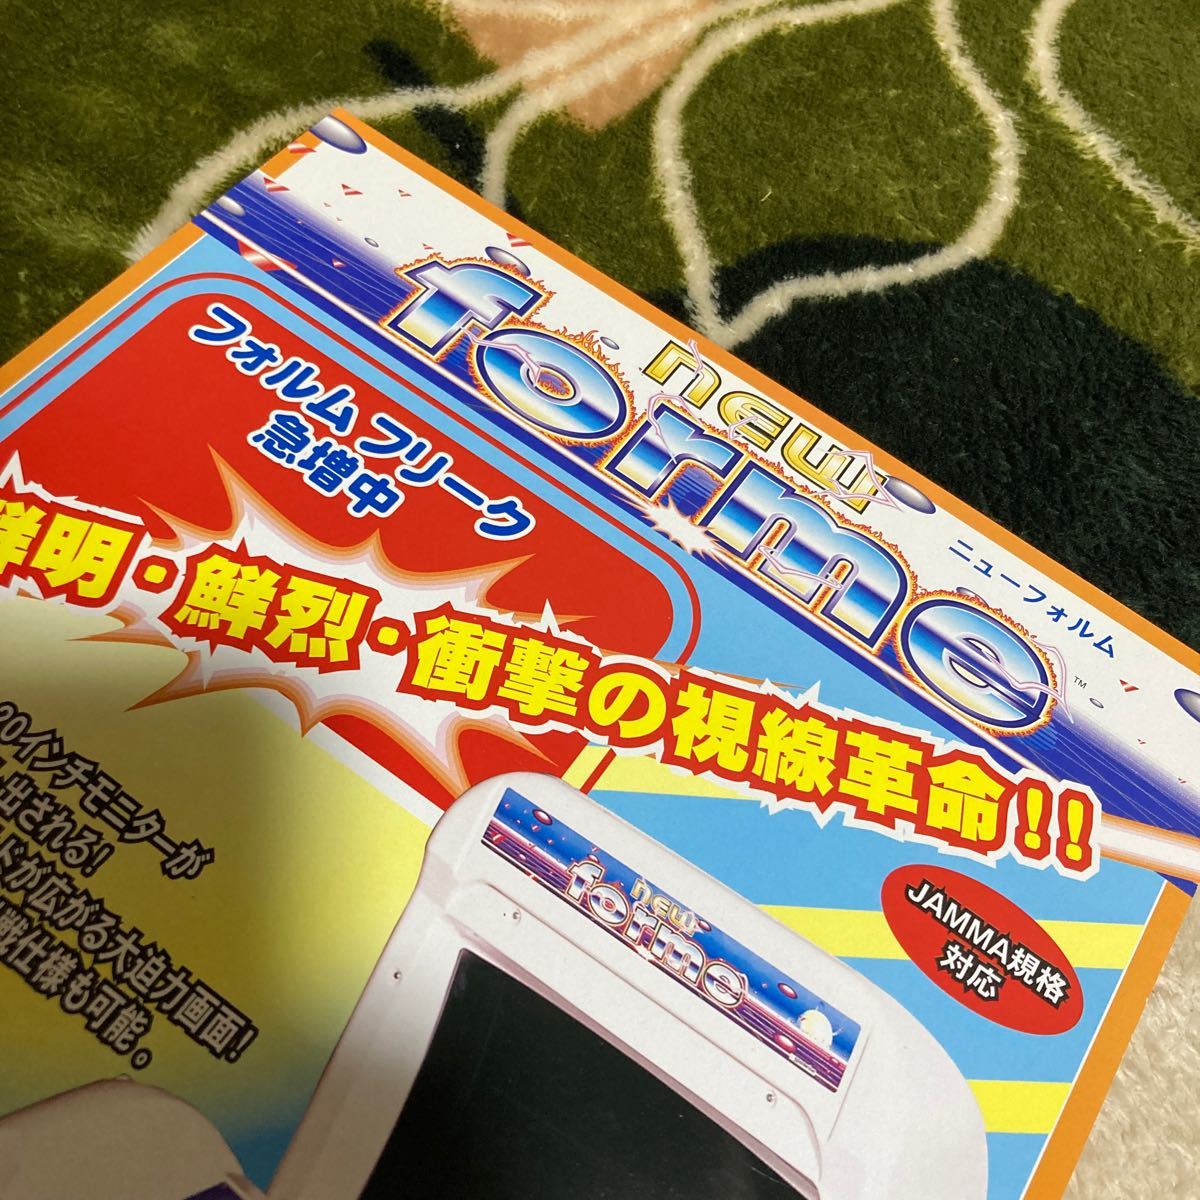  new form NEW FORME Sanwa iz case arcade leaflet catalog Flyer pamphlet regular goods spot sale rare not for sale ..